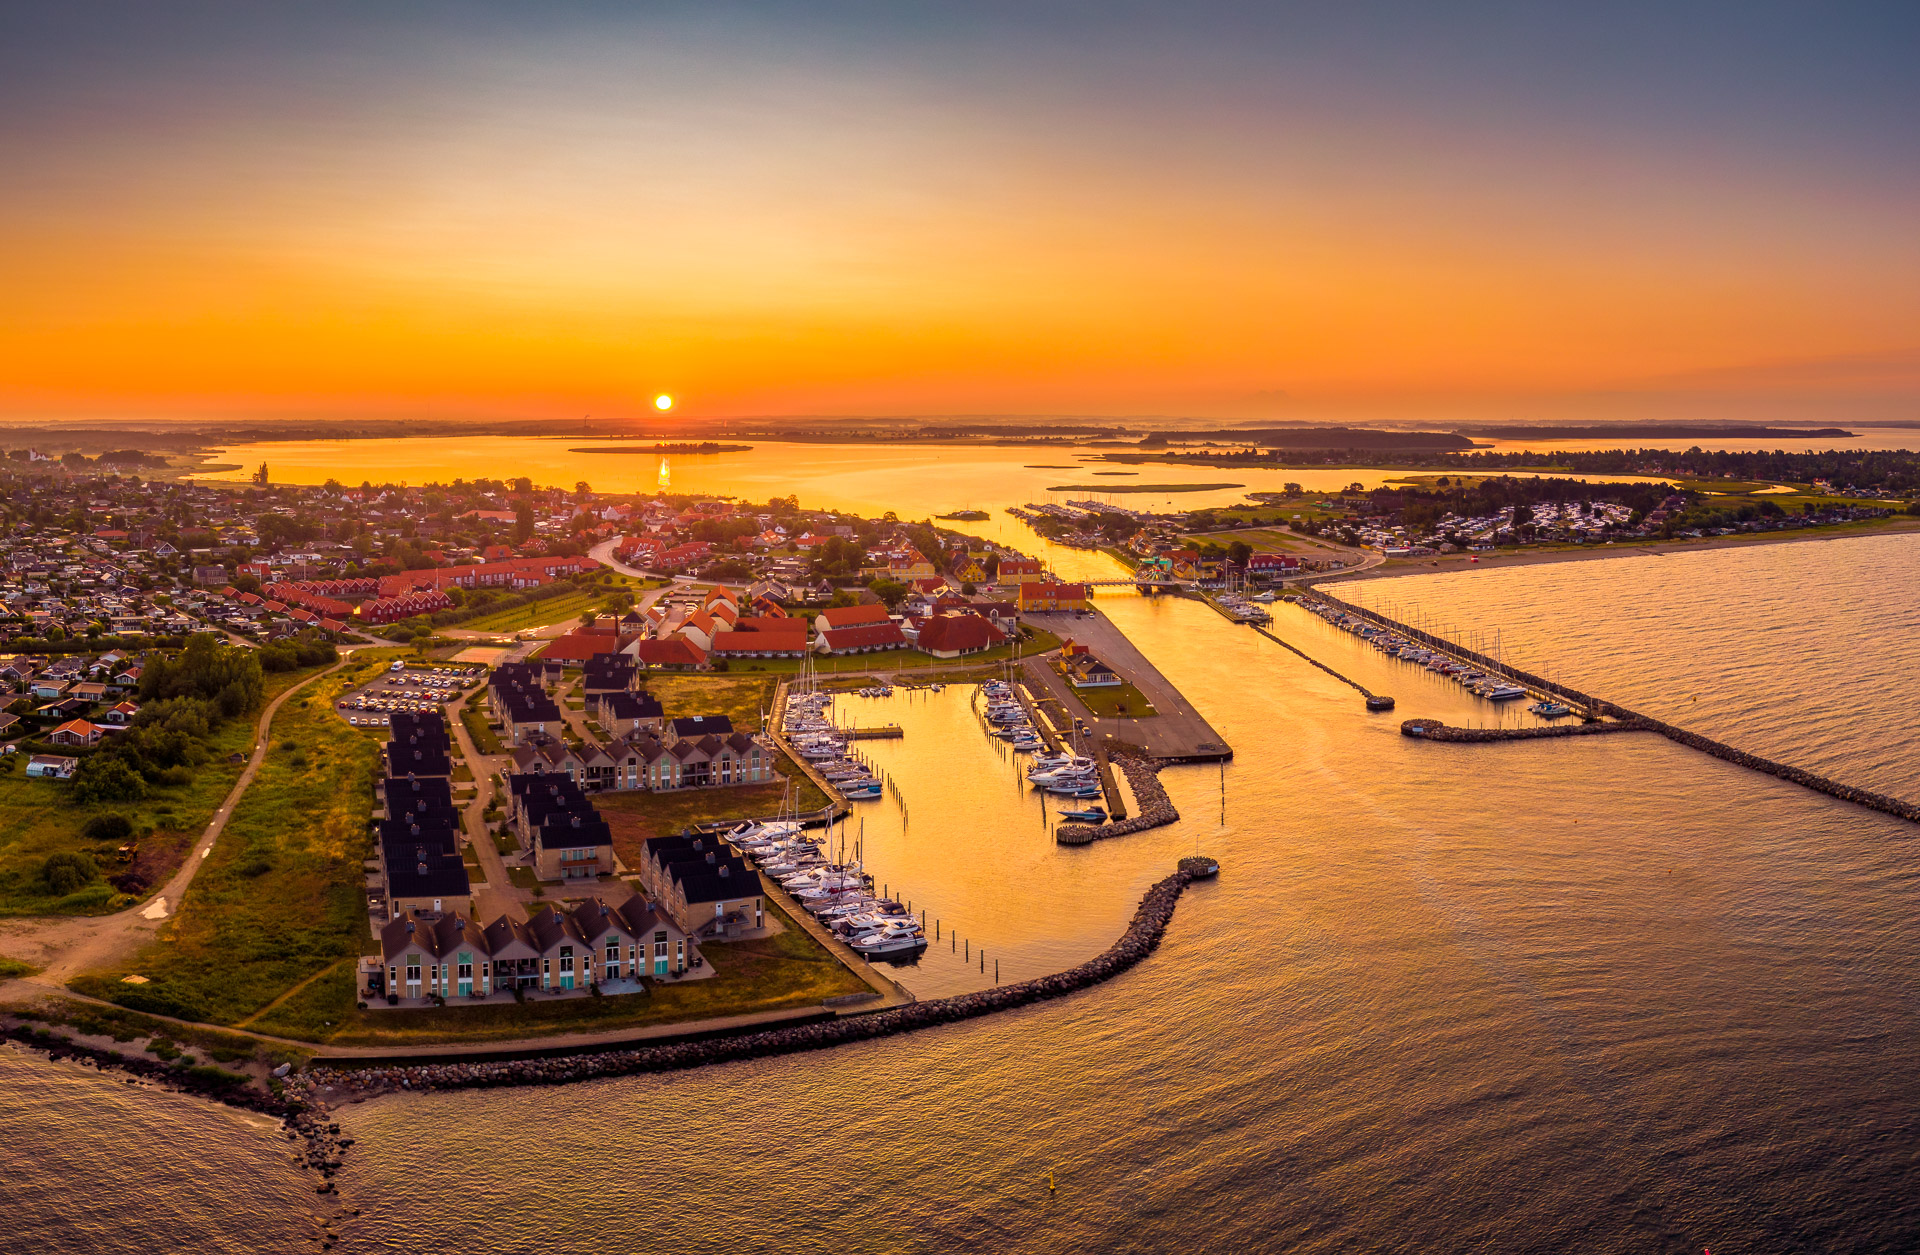 Søfronten, den nye havn i Karrebæksminde og måske en af Danmarks alle smukkeste indsejlinger til en fjord. Til højre i billedet ses boren Græshoppen, som forbinder Karrebæksminde med Enø. I baggrunden øen Lindholm og Gavnø.

En del af SydkystDanmark